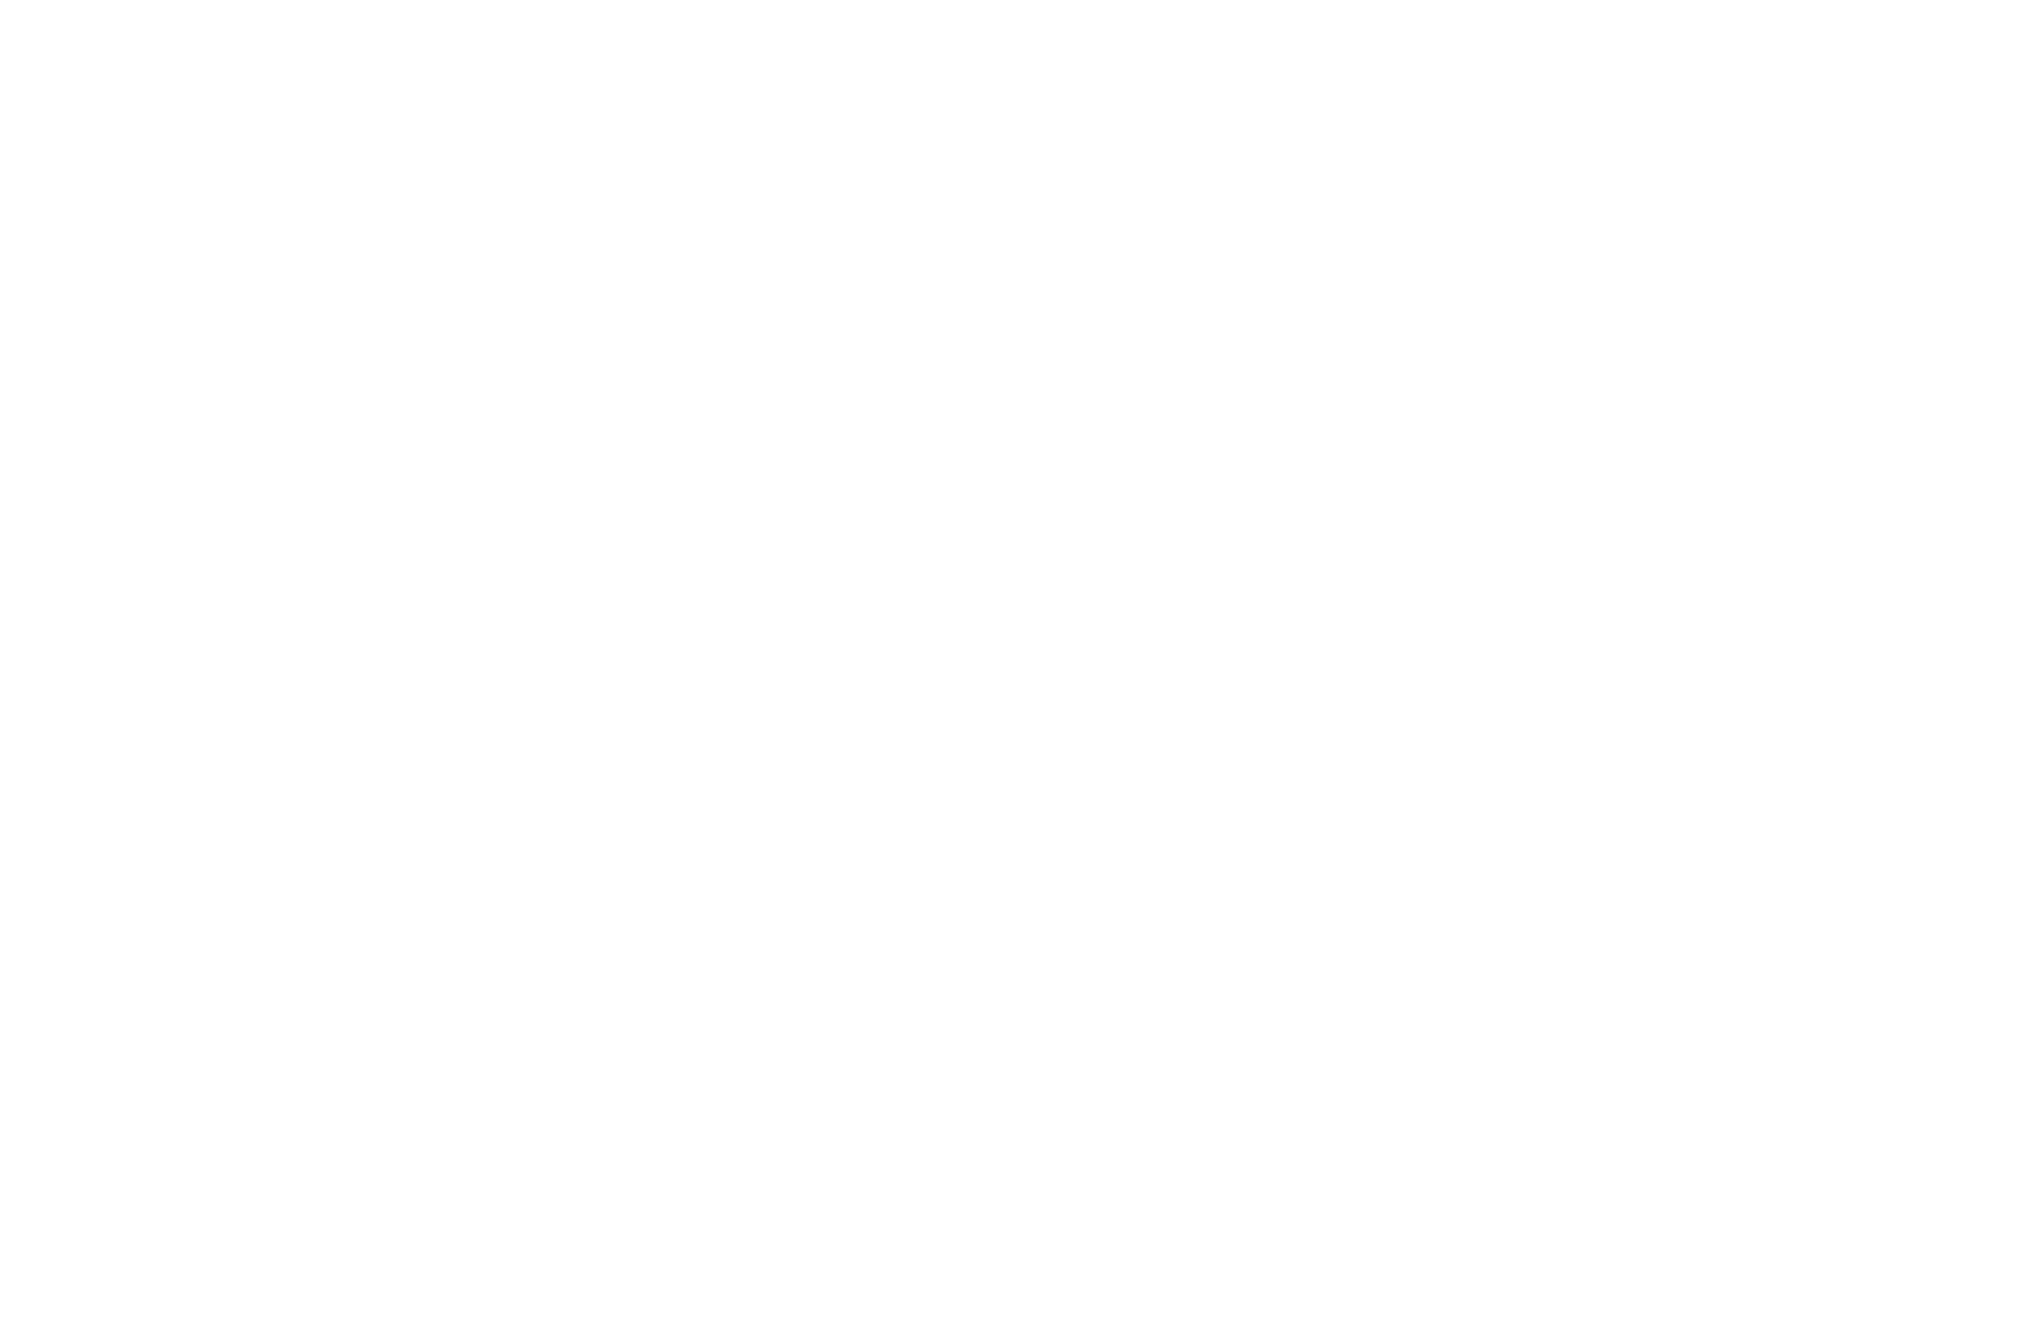 Triton Submarines